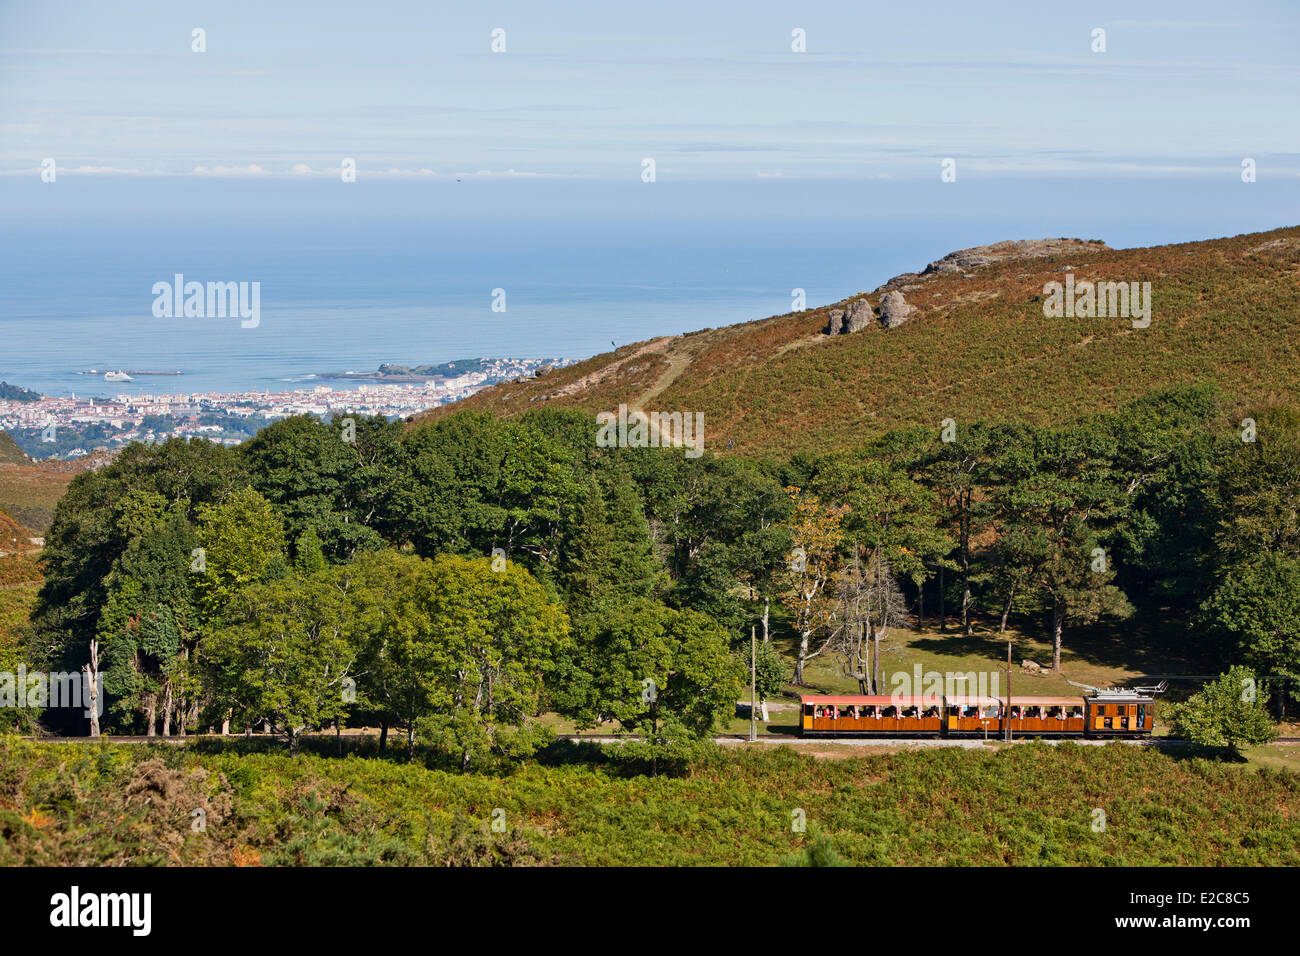 France, Pyrenees Atlantiques, the train of La Rhune, view on Saint Jean de Luz Stock Photo